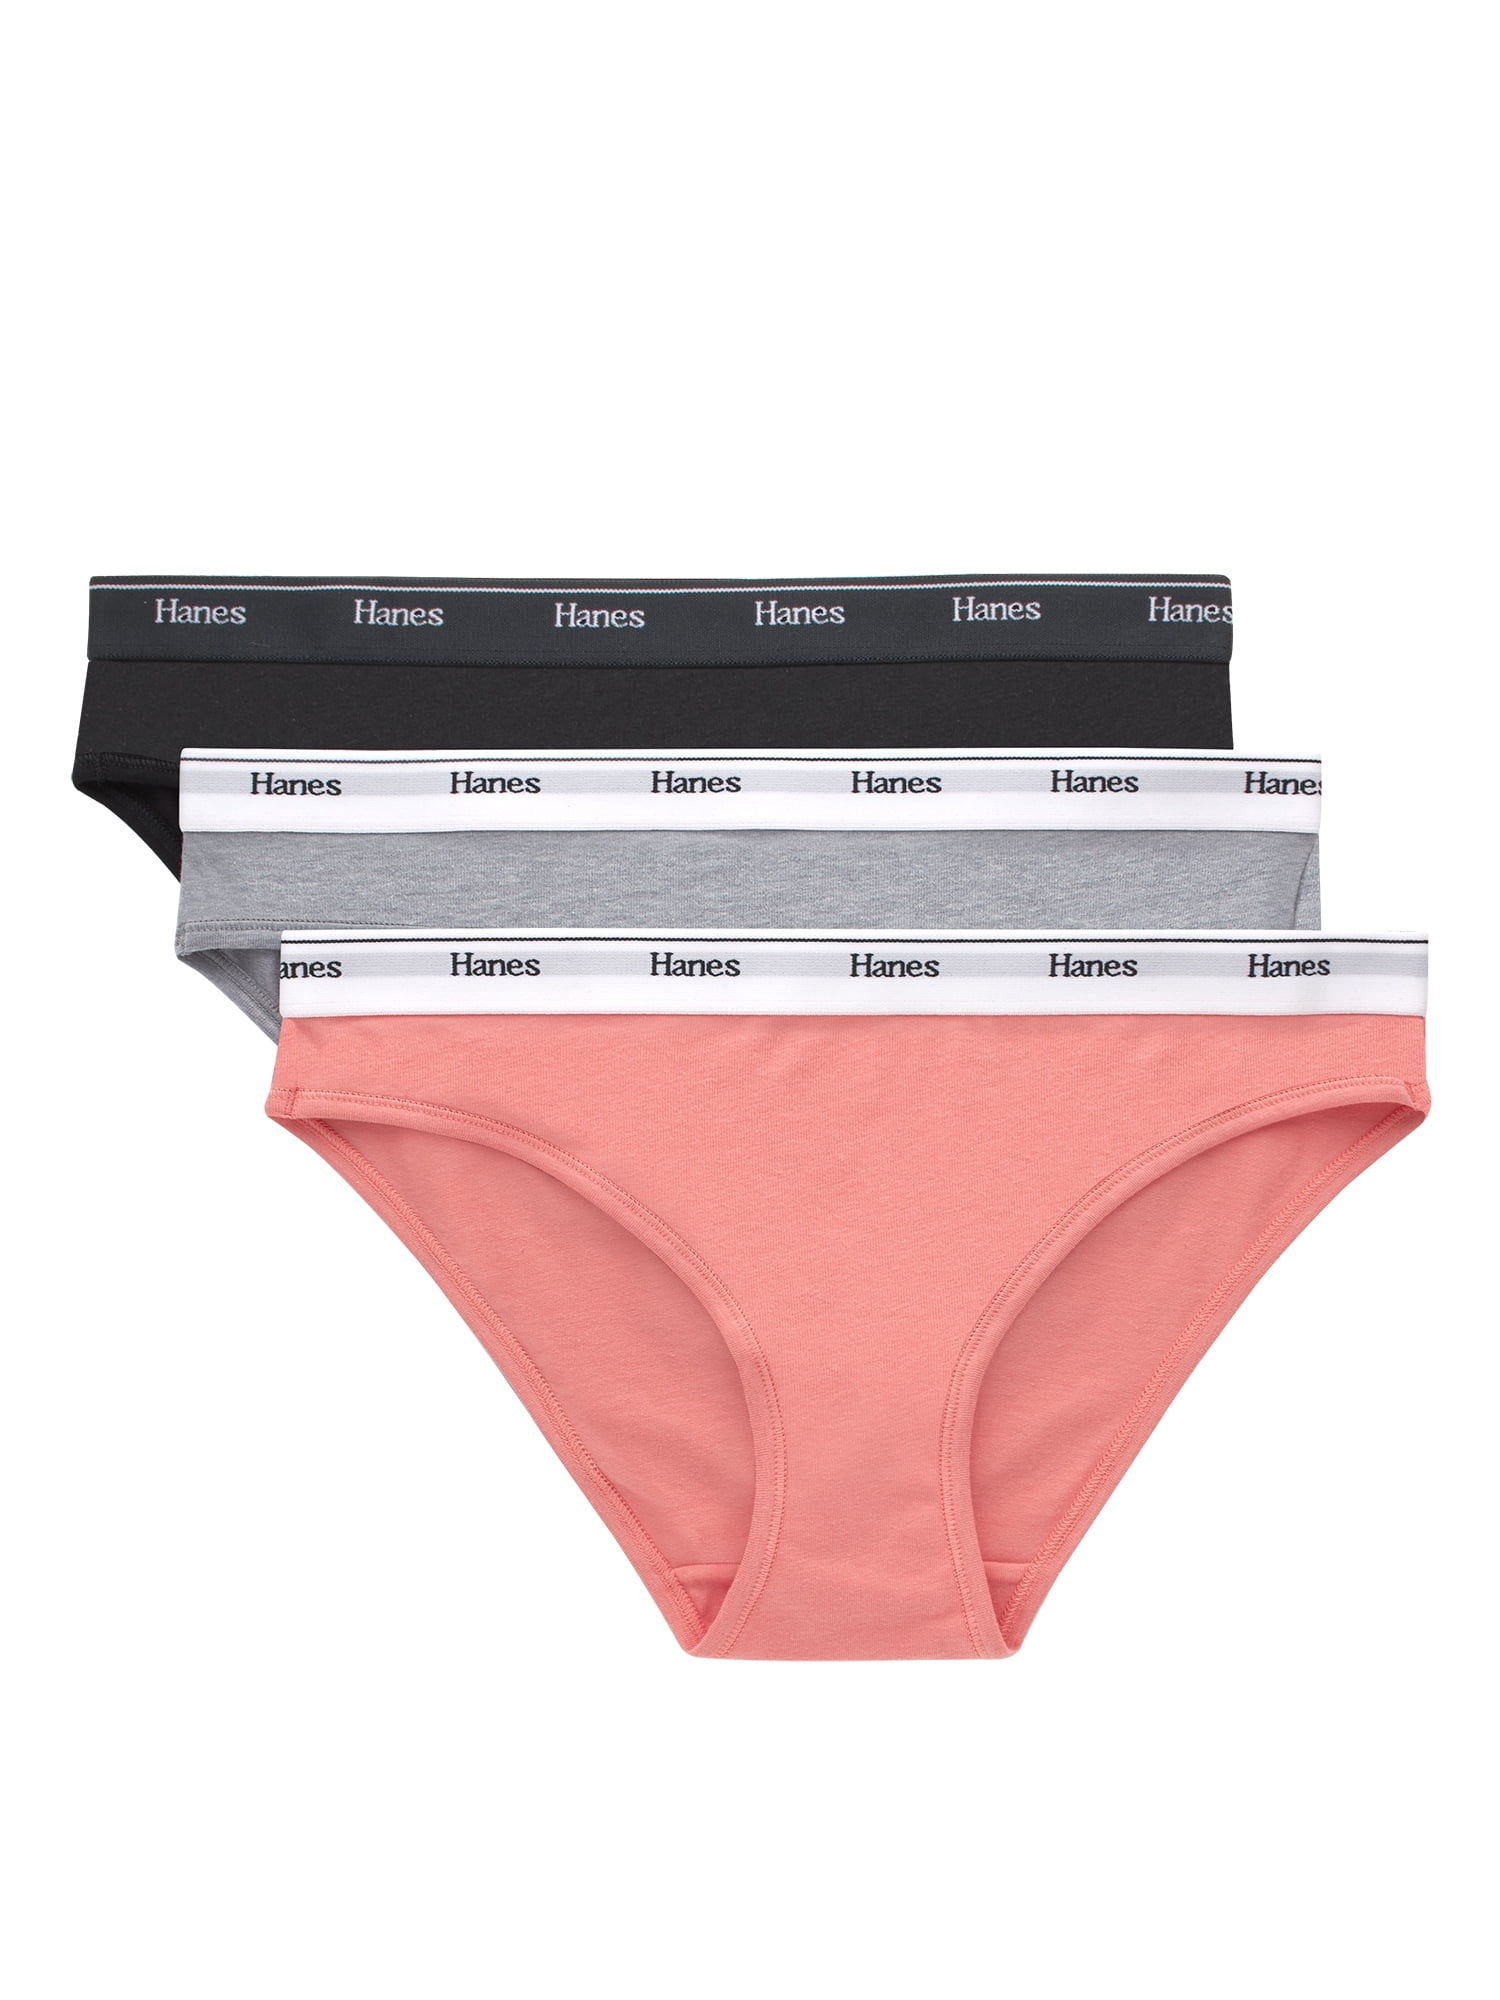 Hanes Originals Women's Thong Underwear, Breathable Cotton Stretch